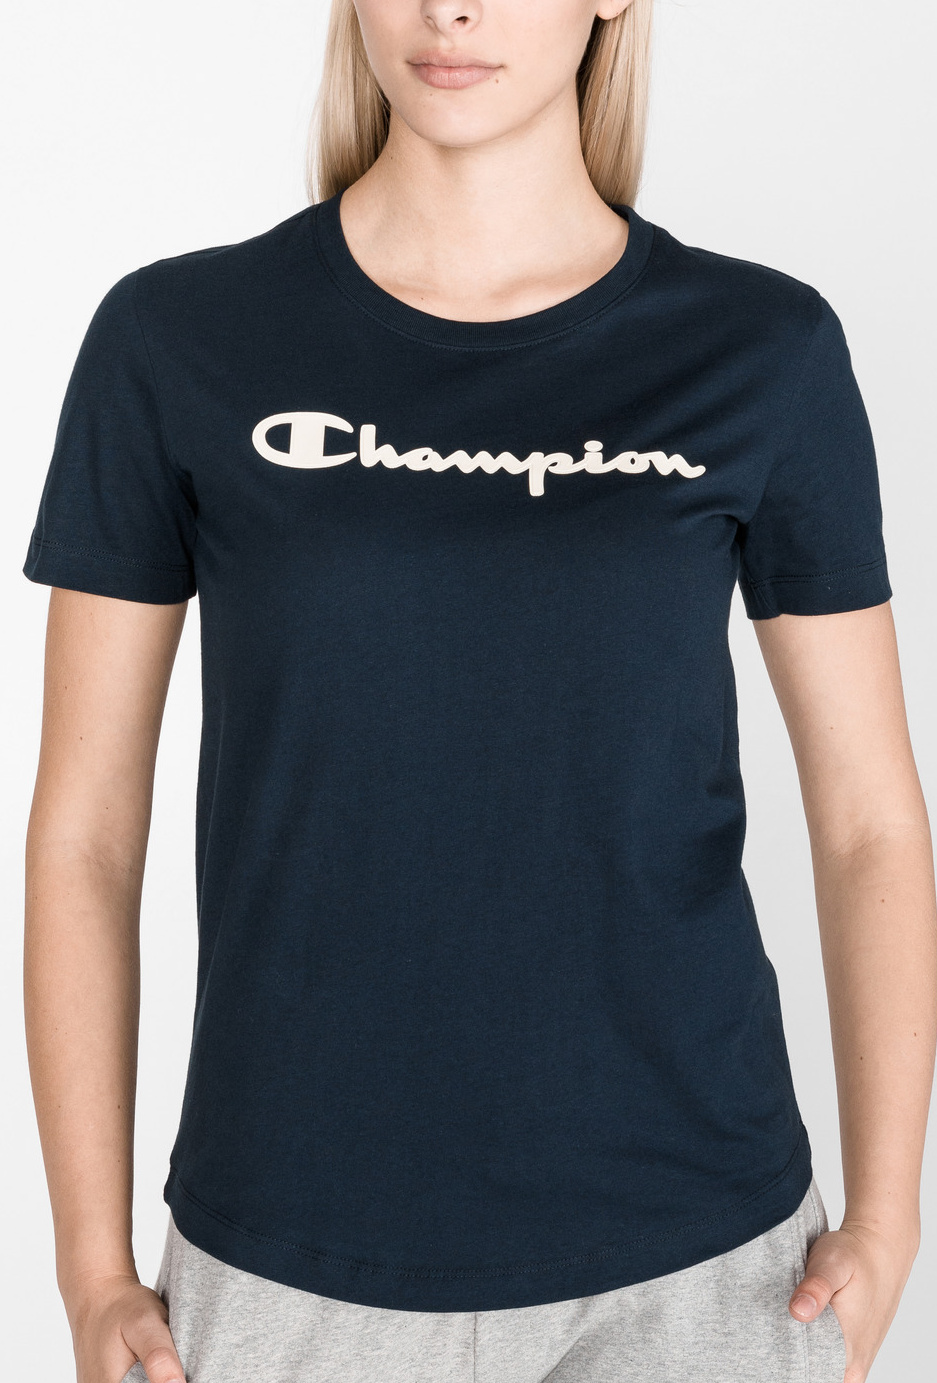 Dámské tričko Champion 112019 černá